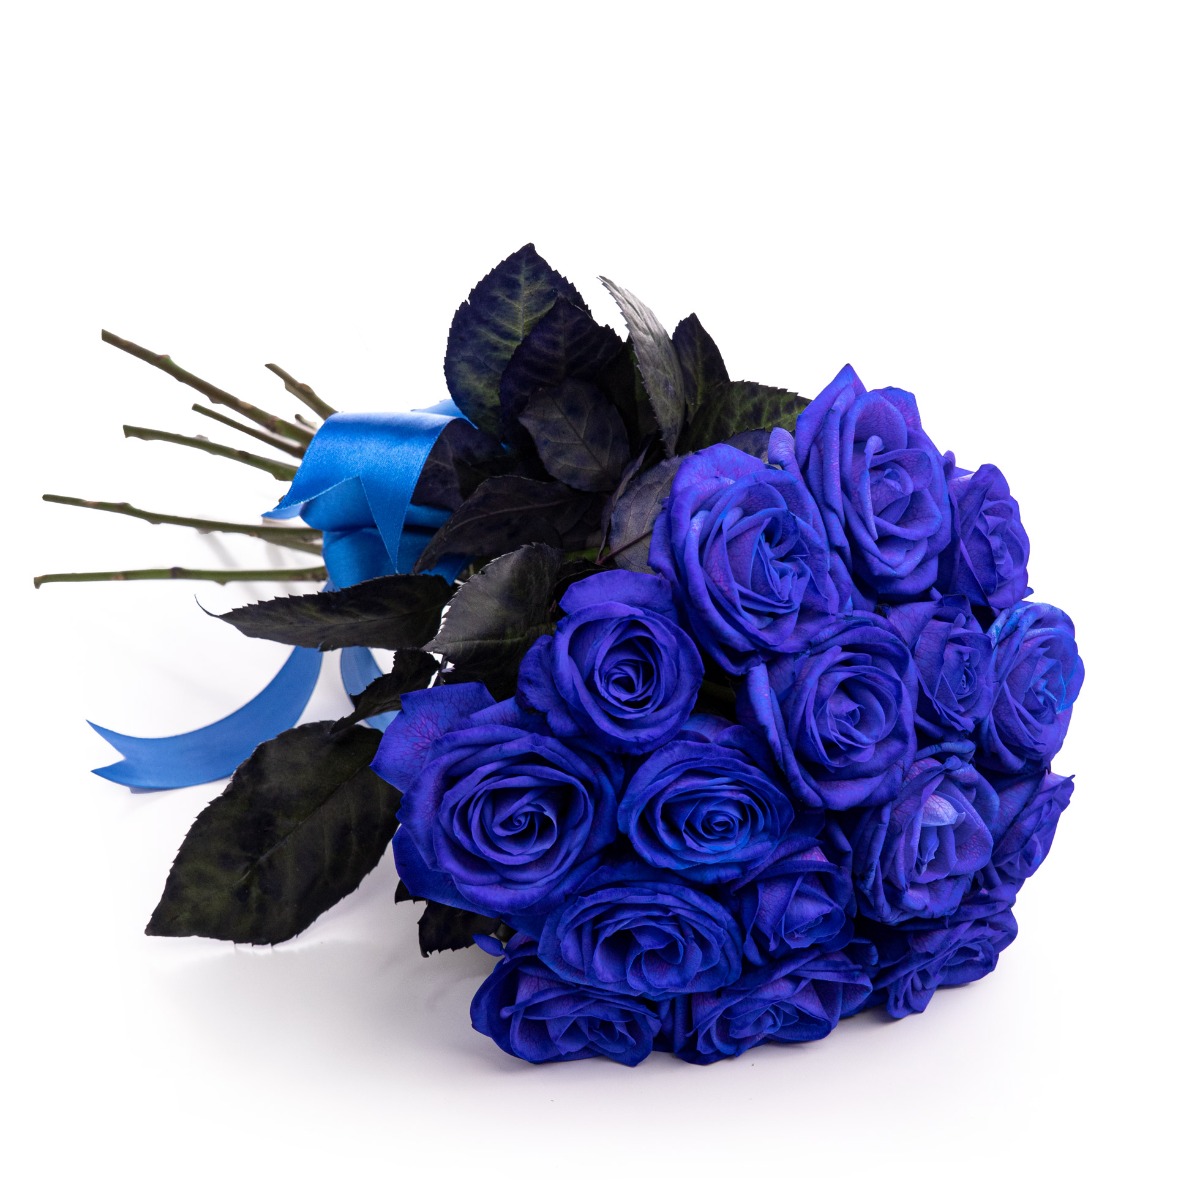 Buchet trandafiri albastri Blue Perfection